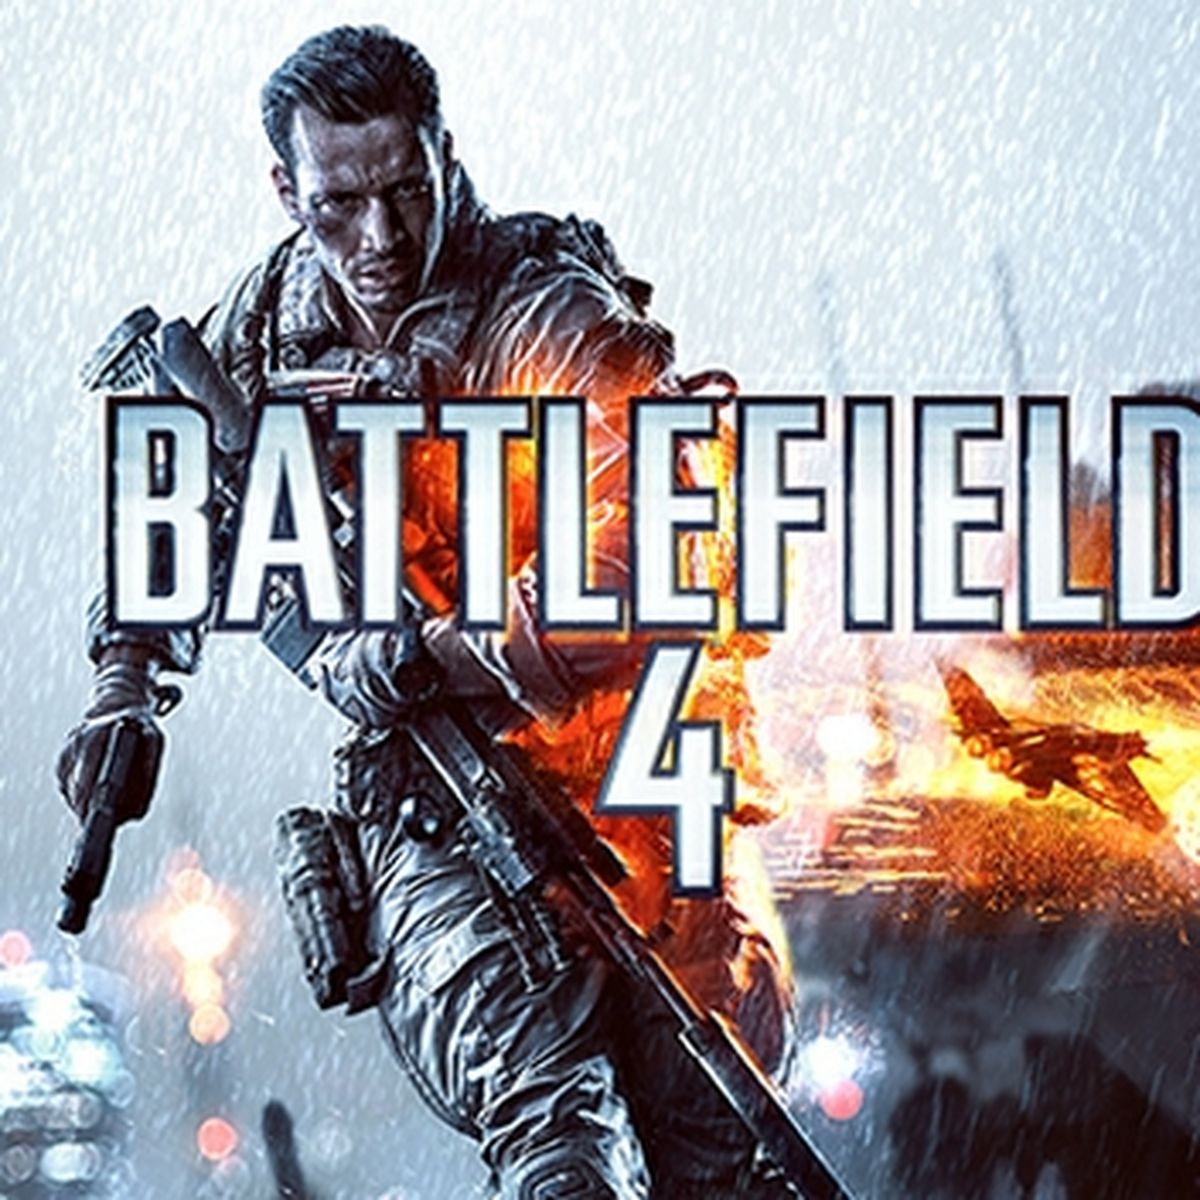 Battlefield 4: Requerimientos de PC, Entretenimiento Cultura Pop